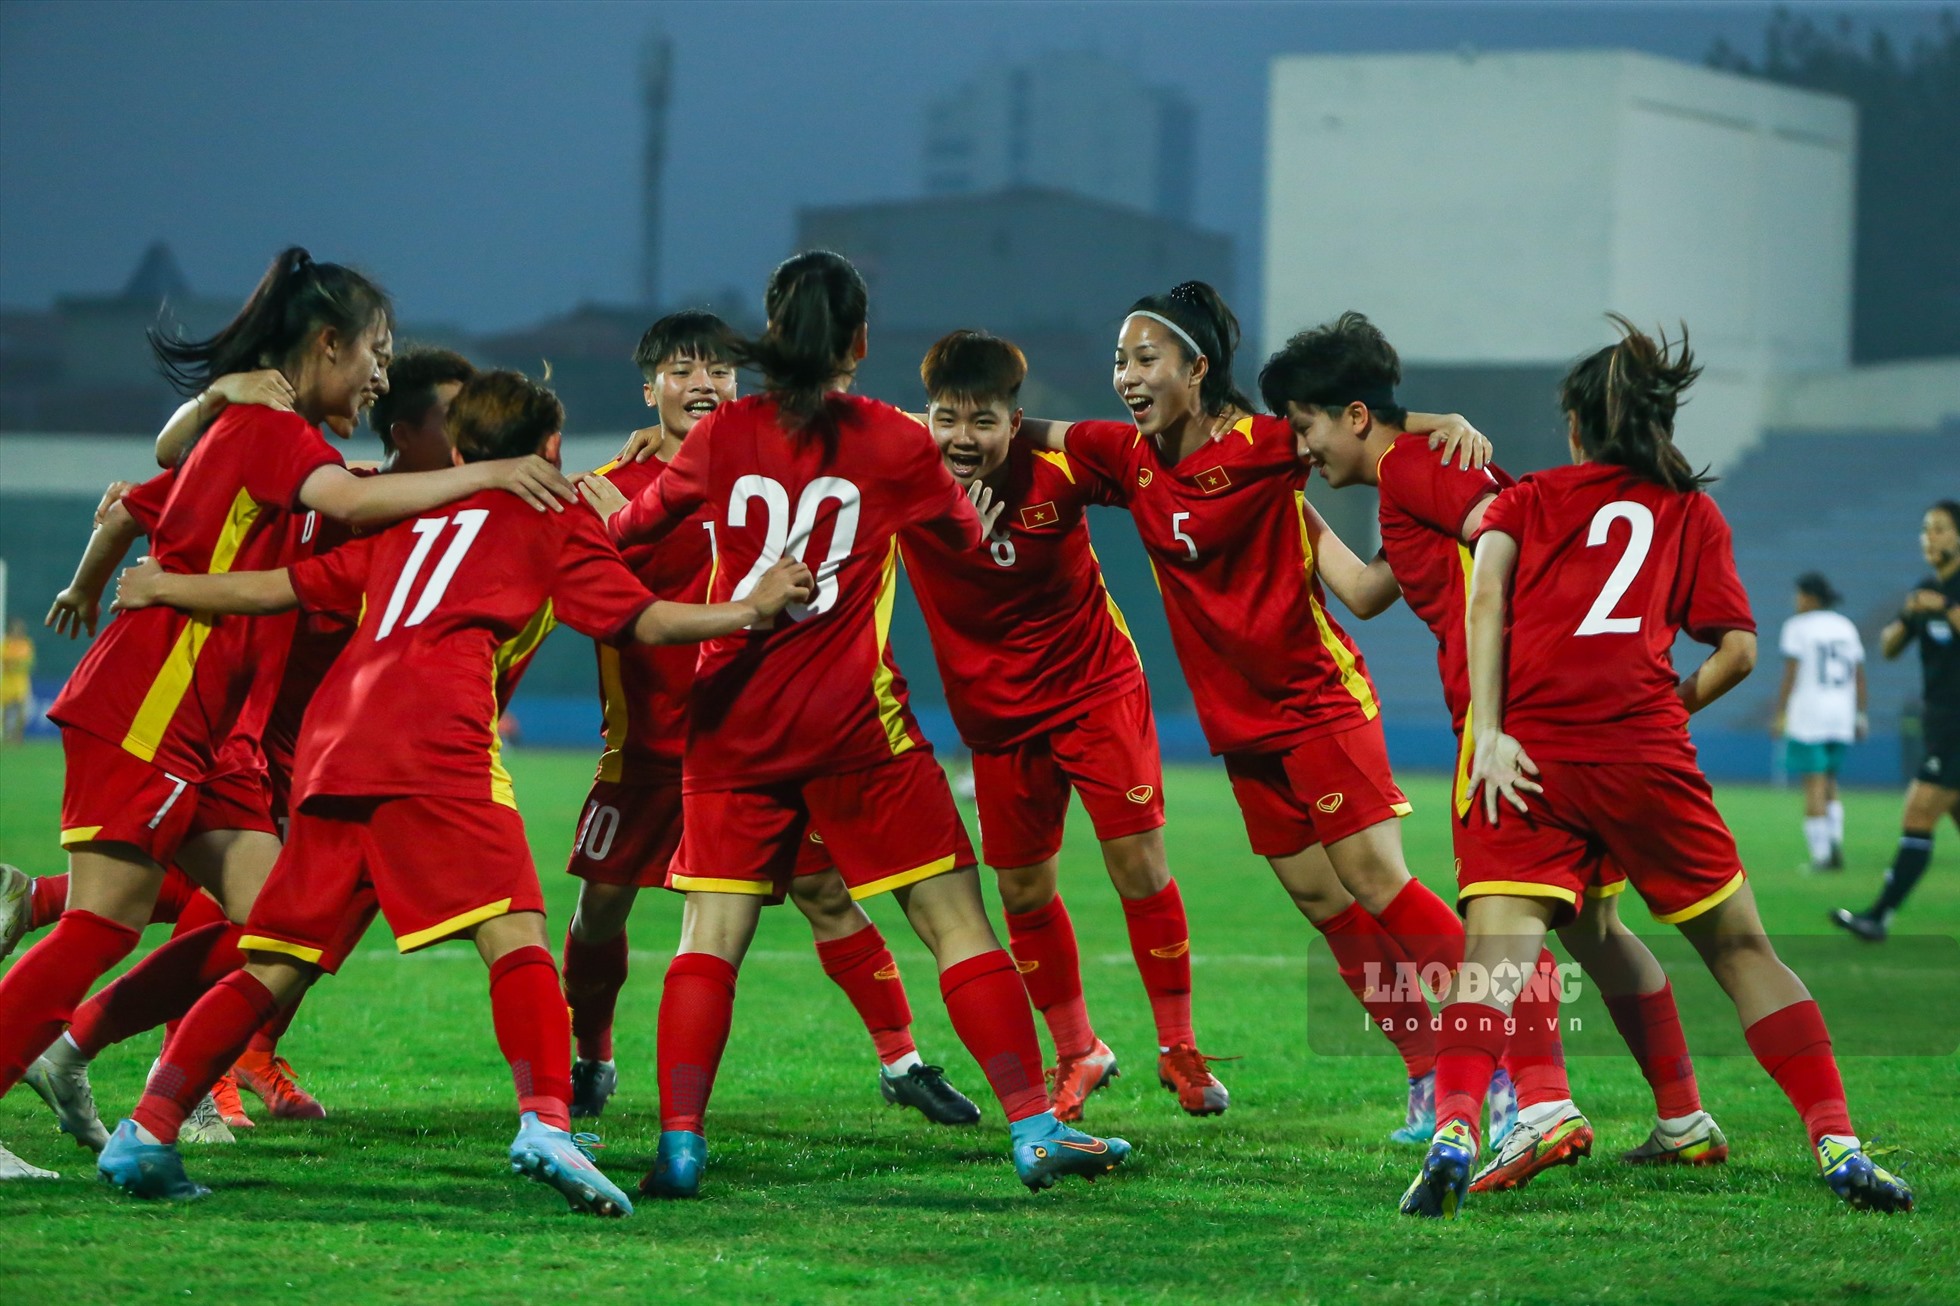 Trận đấu kết thúc với tỉ số 3-0 dành cho U20 nữ Việt Nam.